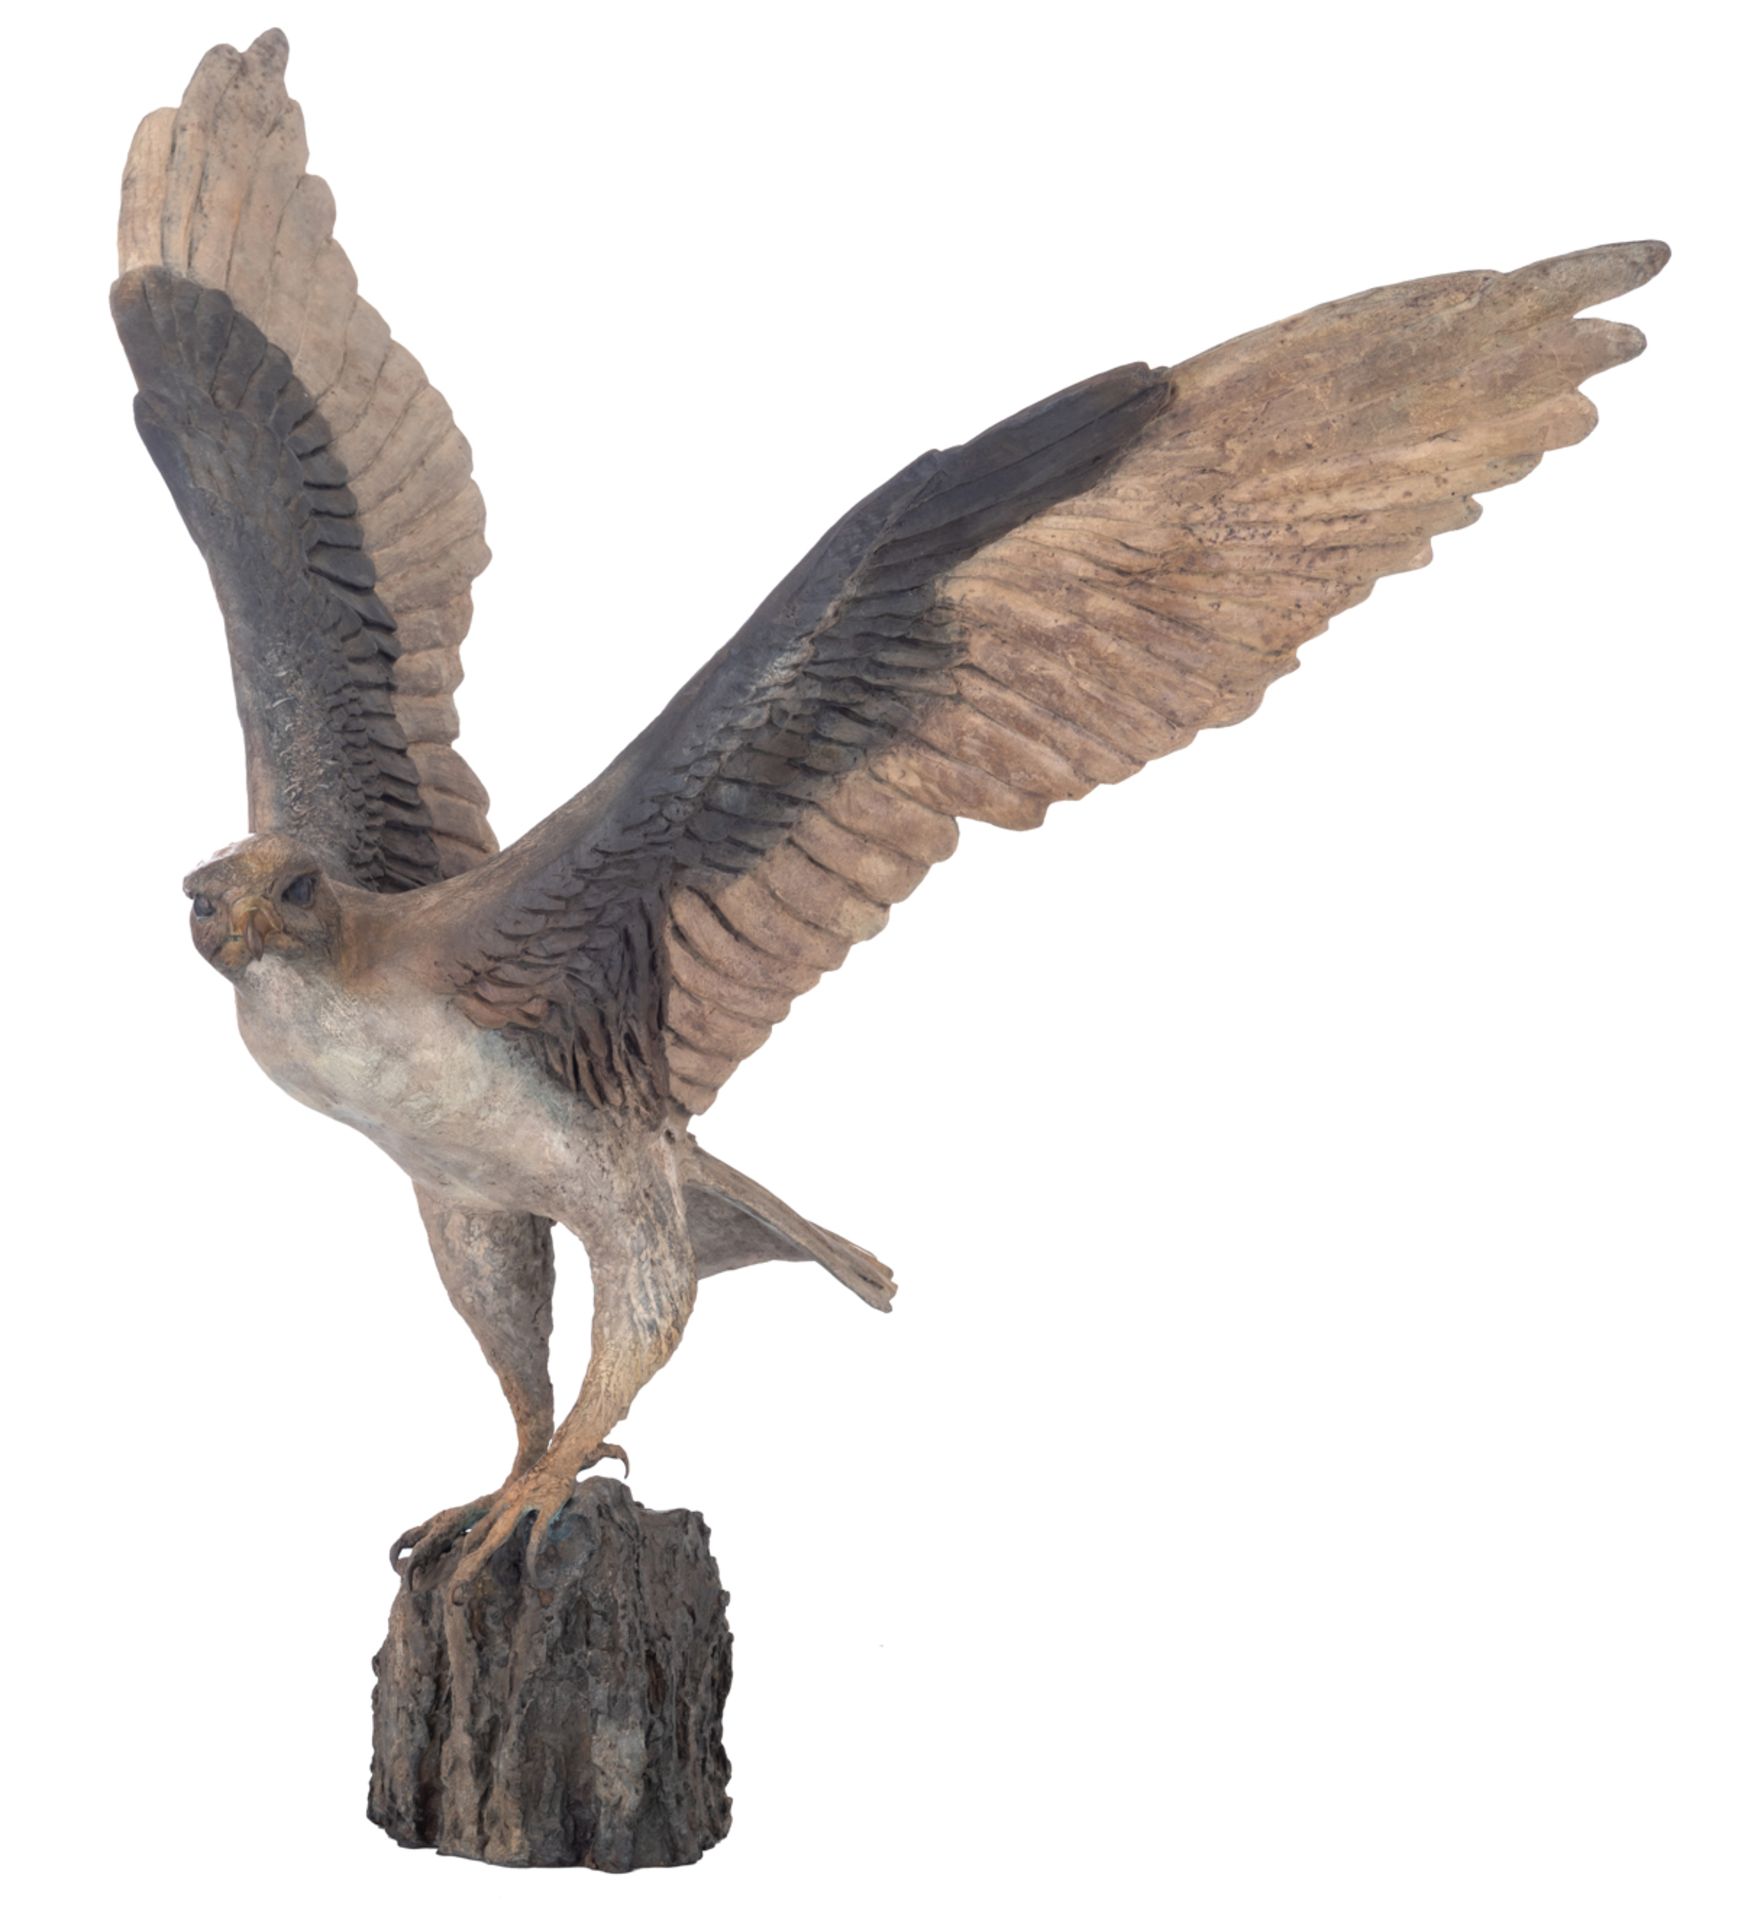 Madeleine van der Knoop, the falcon, N° 3/6, cold painted bronze, H 71 - W 78 cm